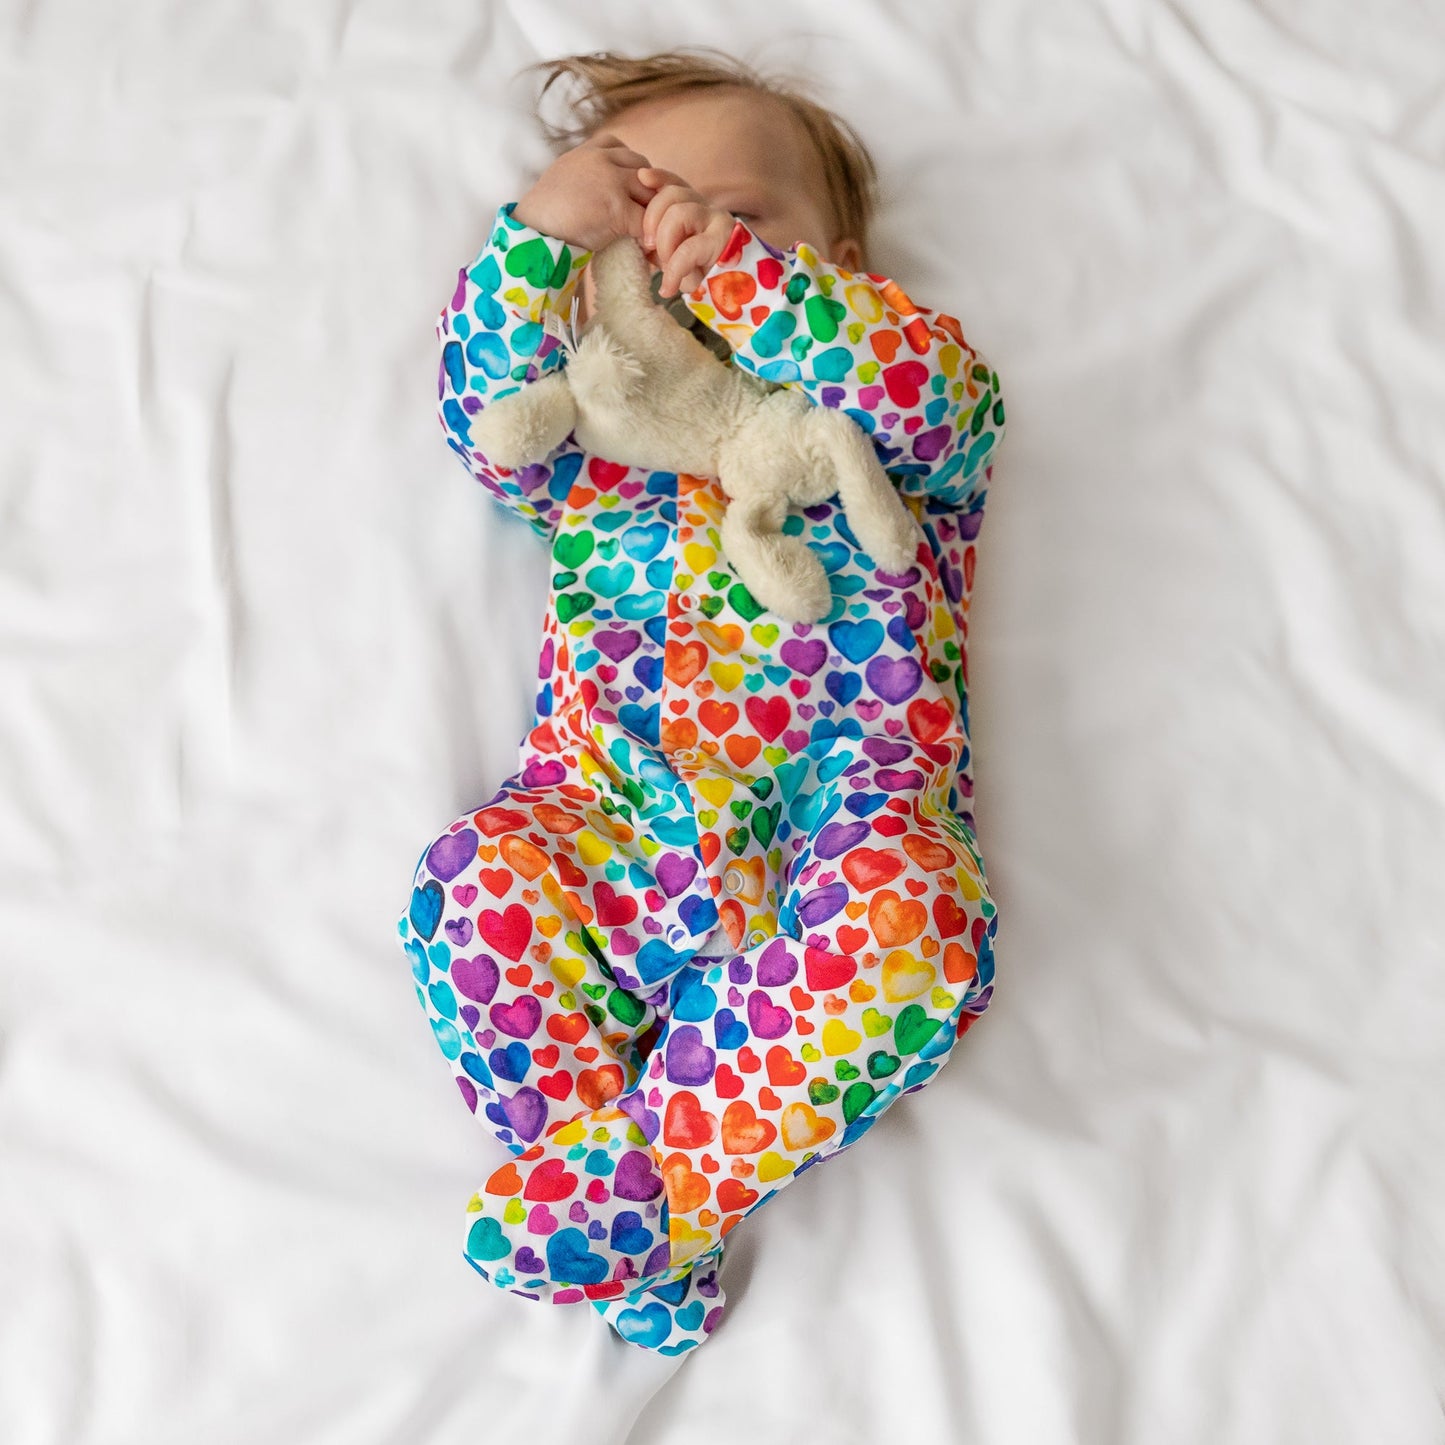 Rainbow Heart Cotton Sleepsuit